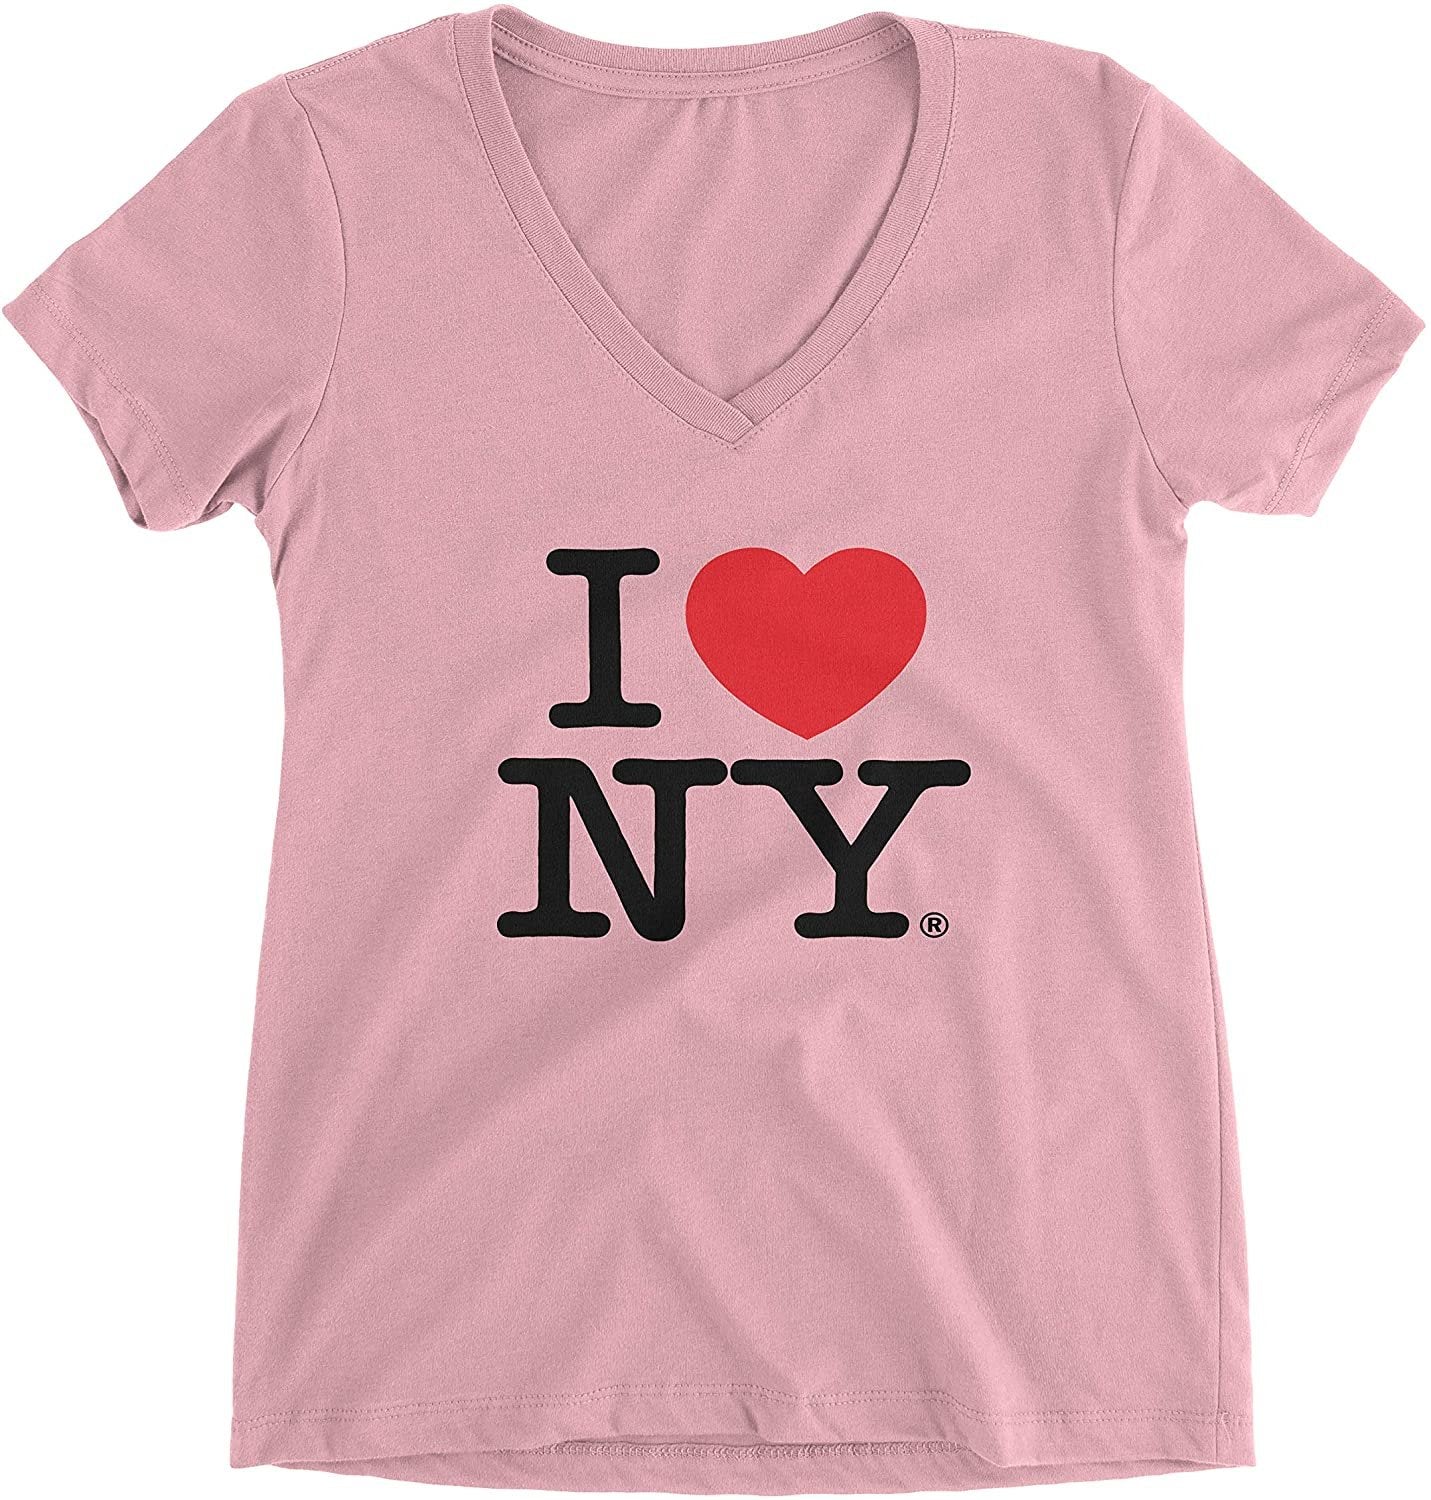 I Love NY Ladies V-Neck T-Shirt Tee Light Pink